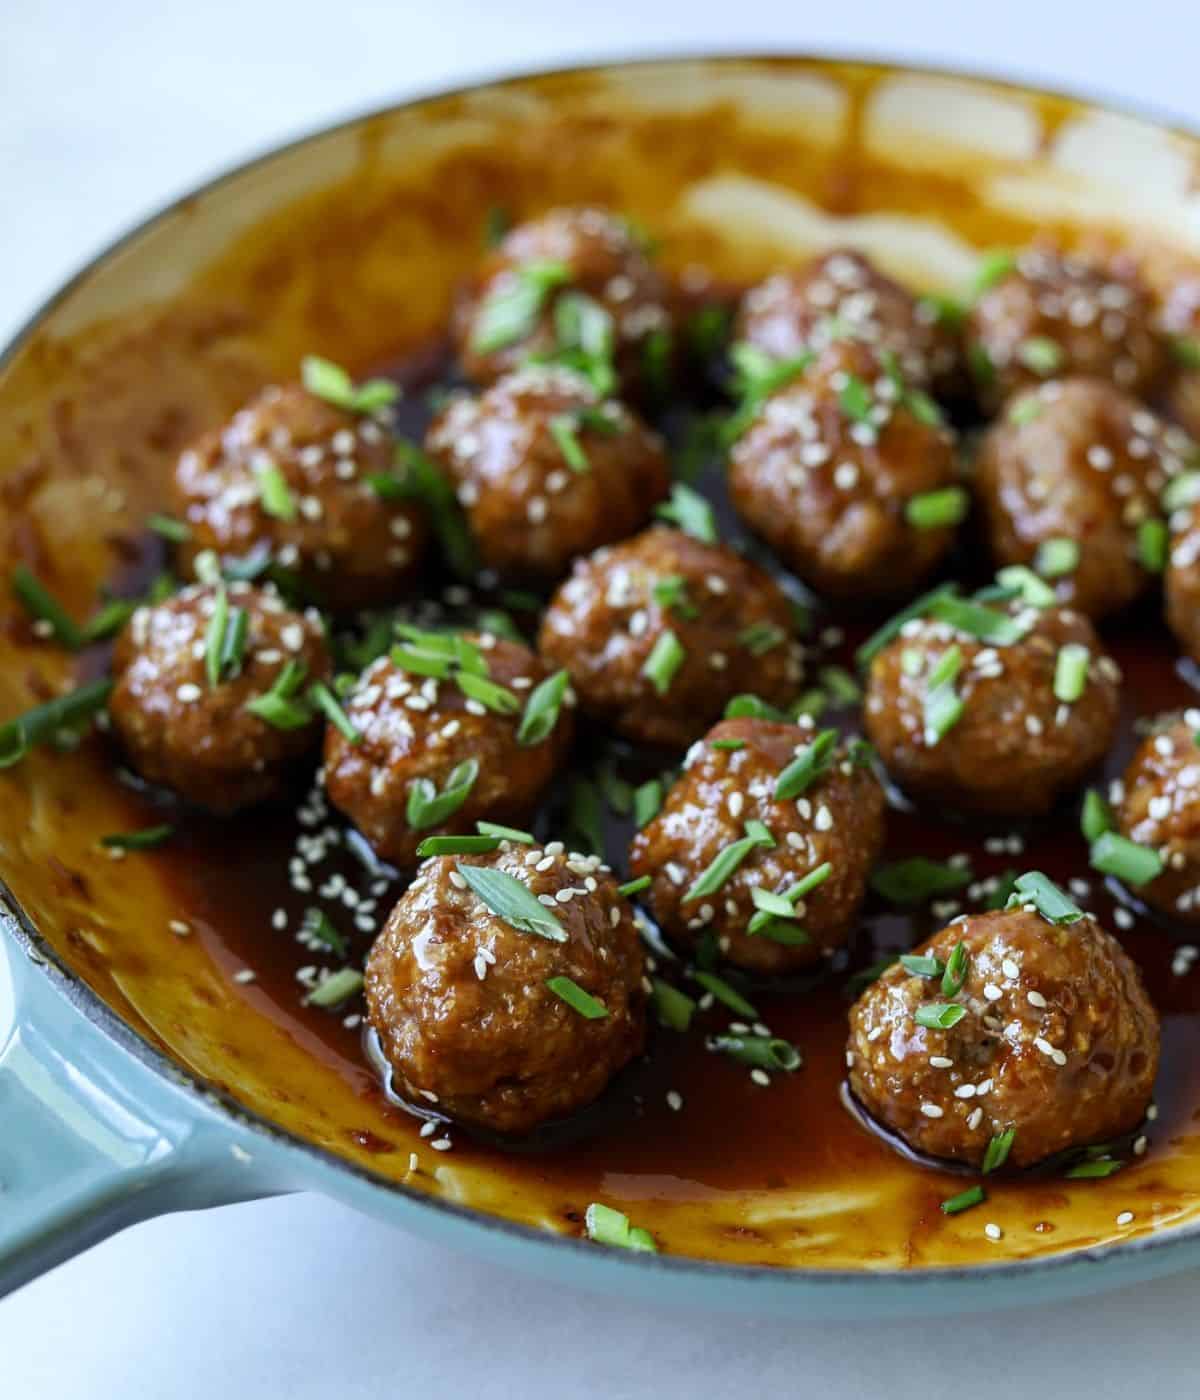 Asian meatballs in enamel pan tossed in glaze.